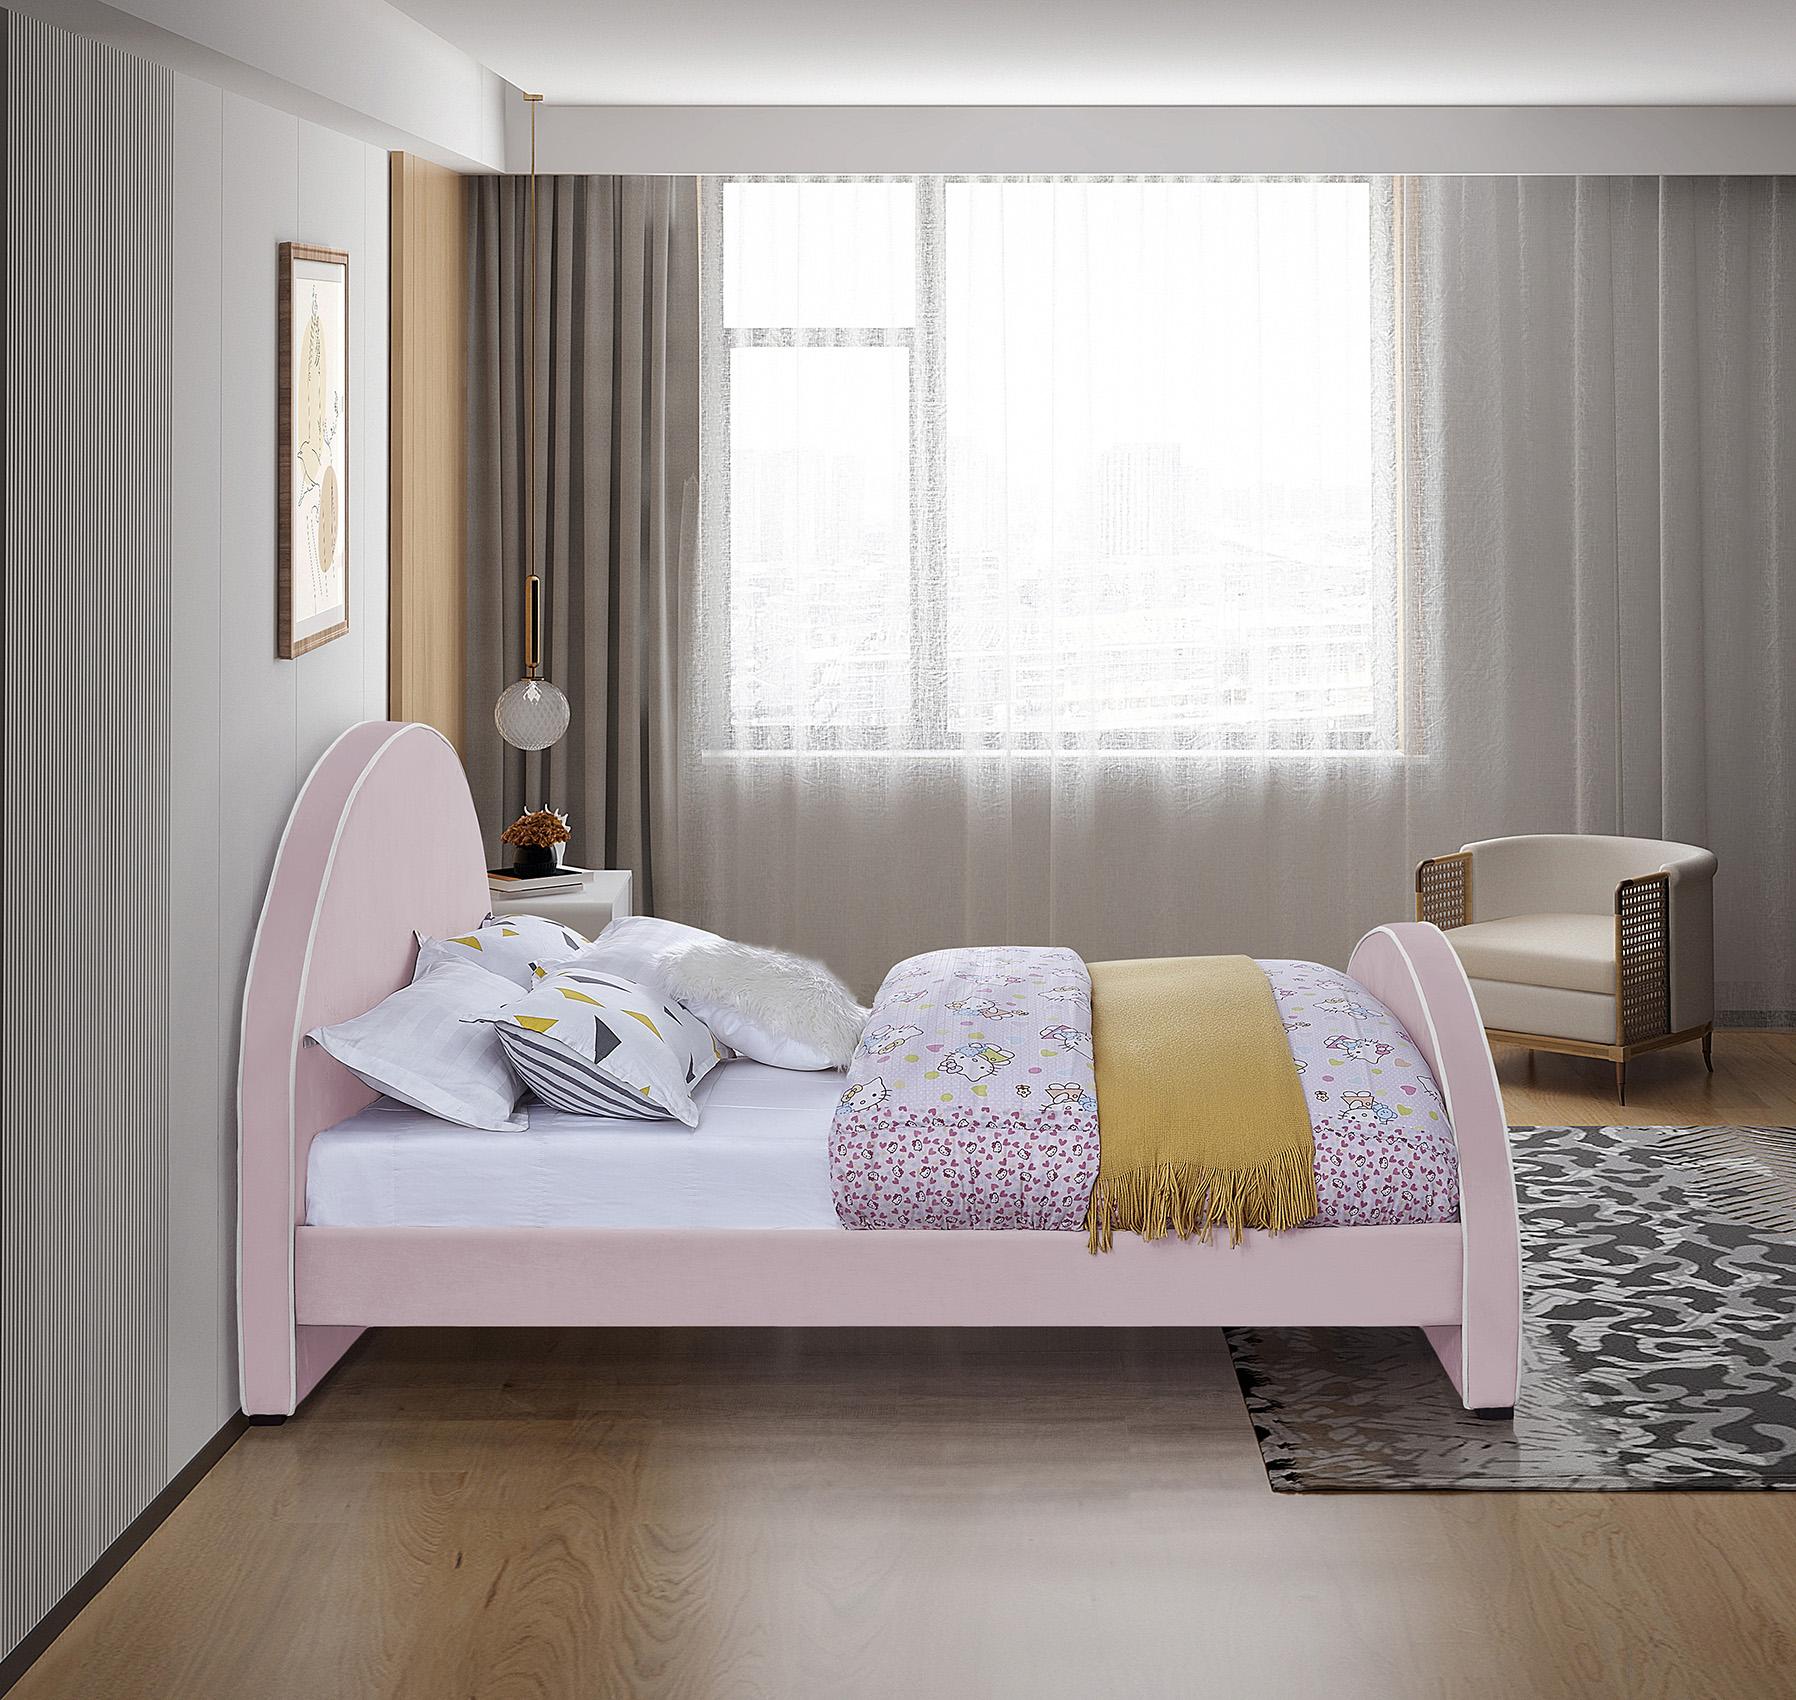 

    
BrodyPink-F Meridian Furniture Platform Bed
